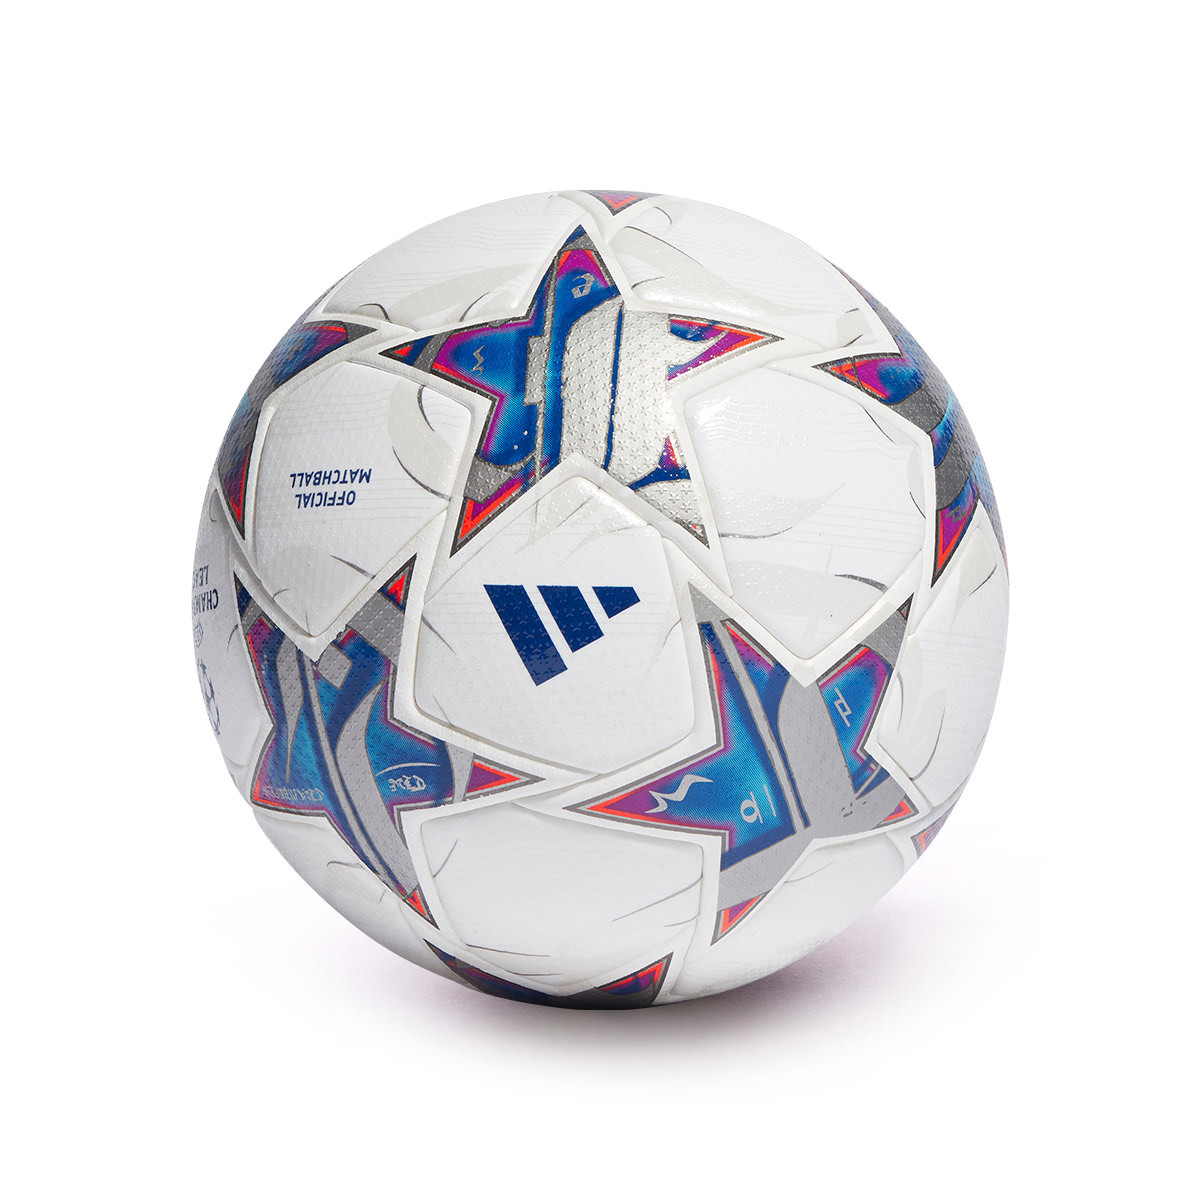 Adidas lança bola da Champions League 2022-2023 » Mantos do Futebol